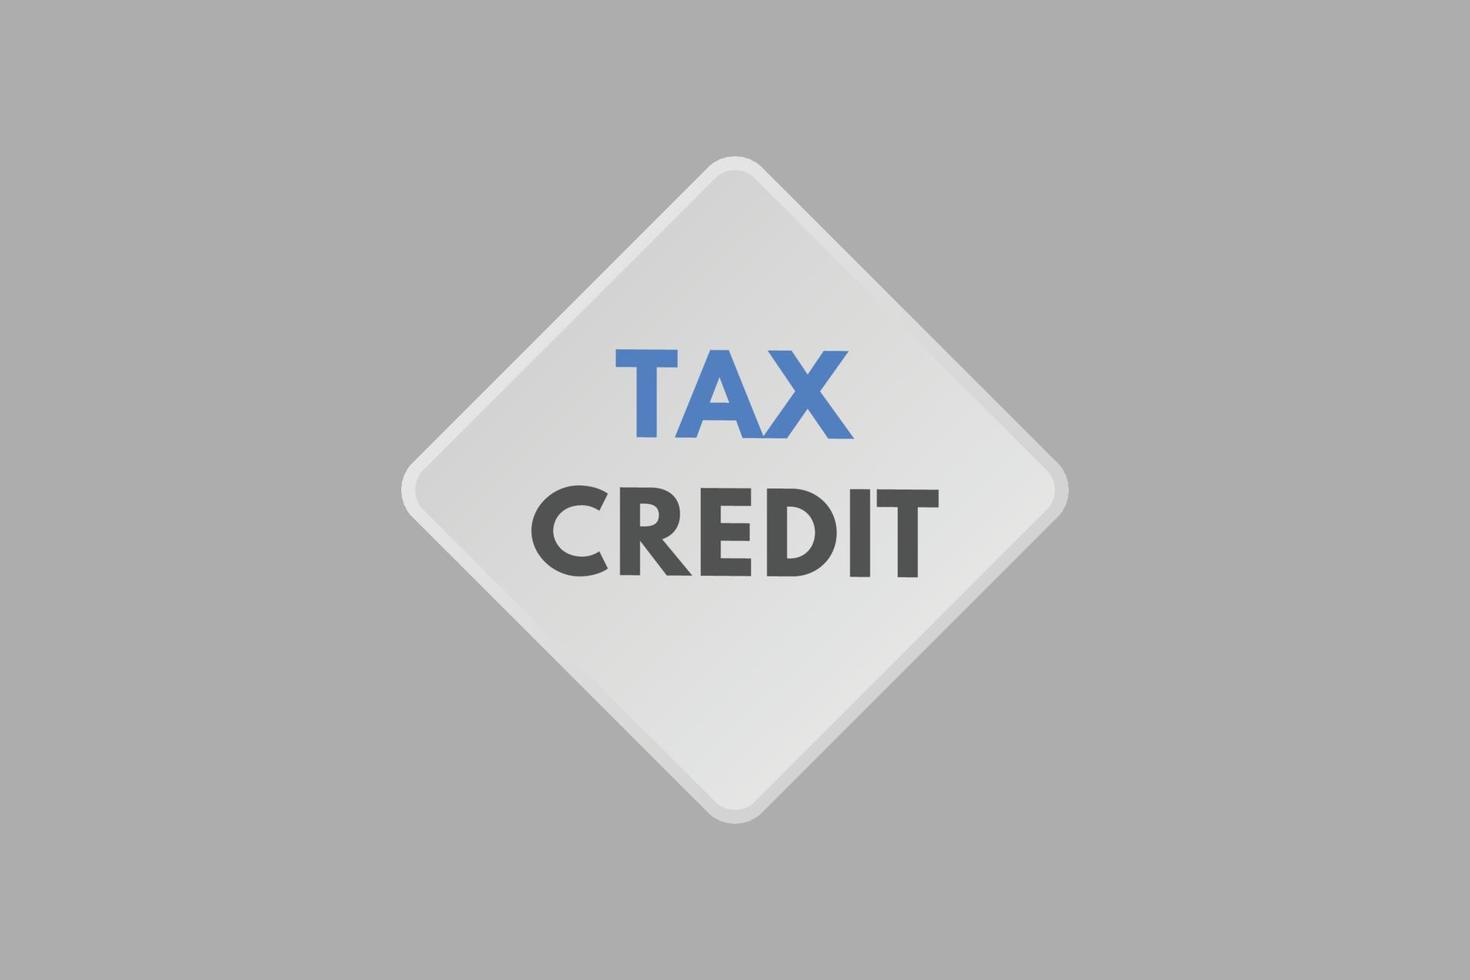 botón de texto de crédito fiscal. crédito fiscal signo icono etiqueta adhesivo web botones vector